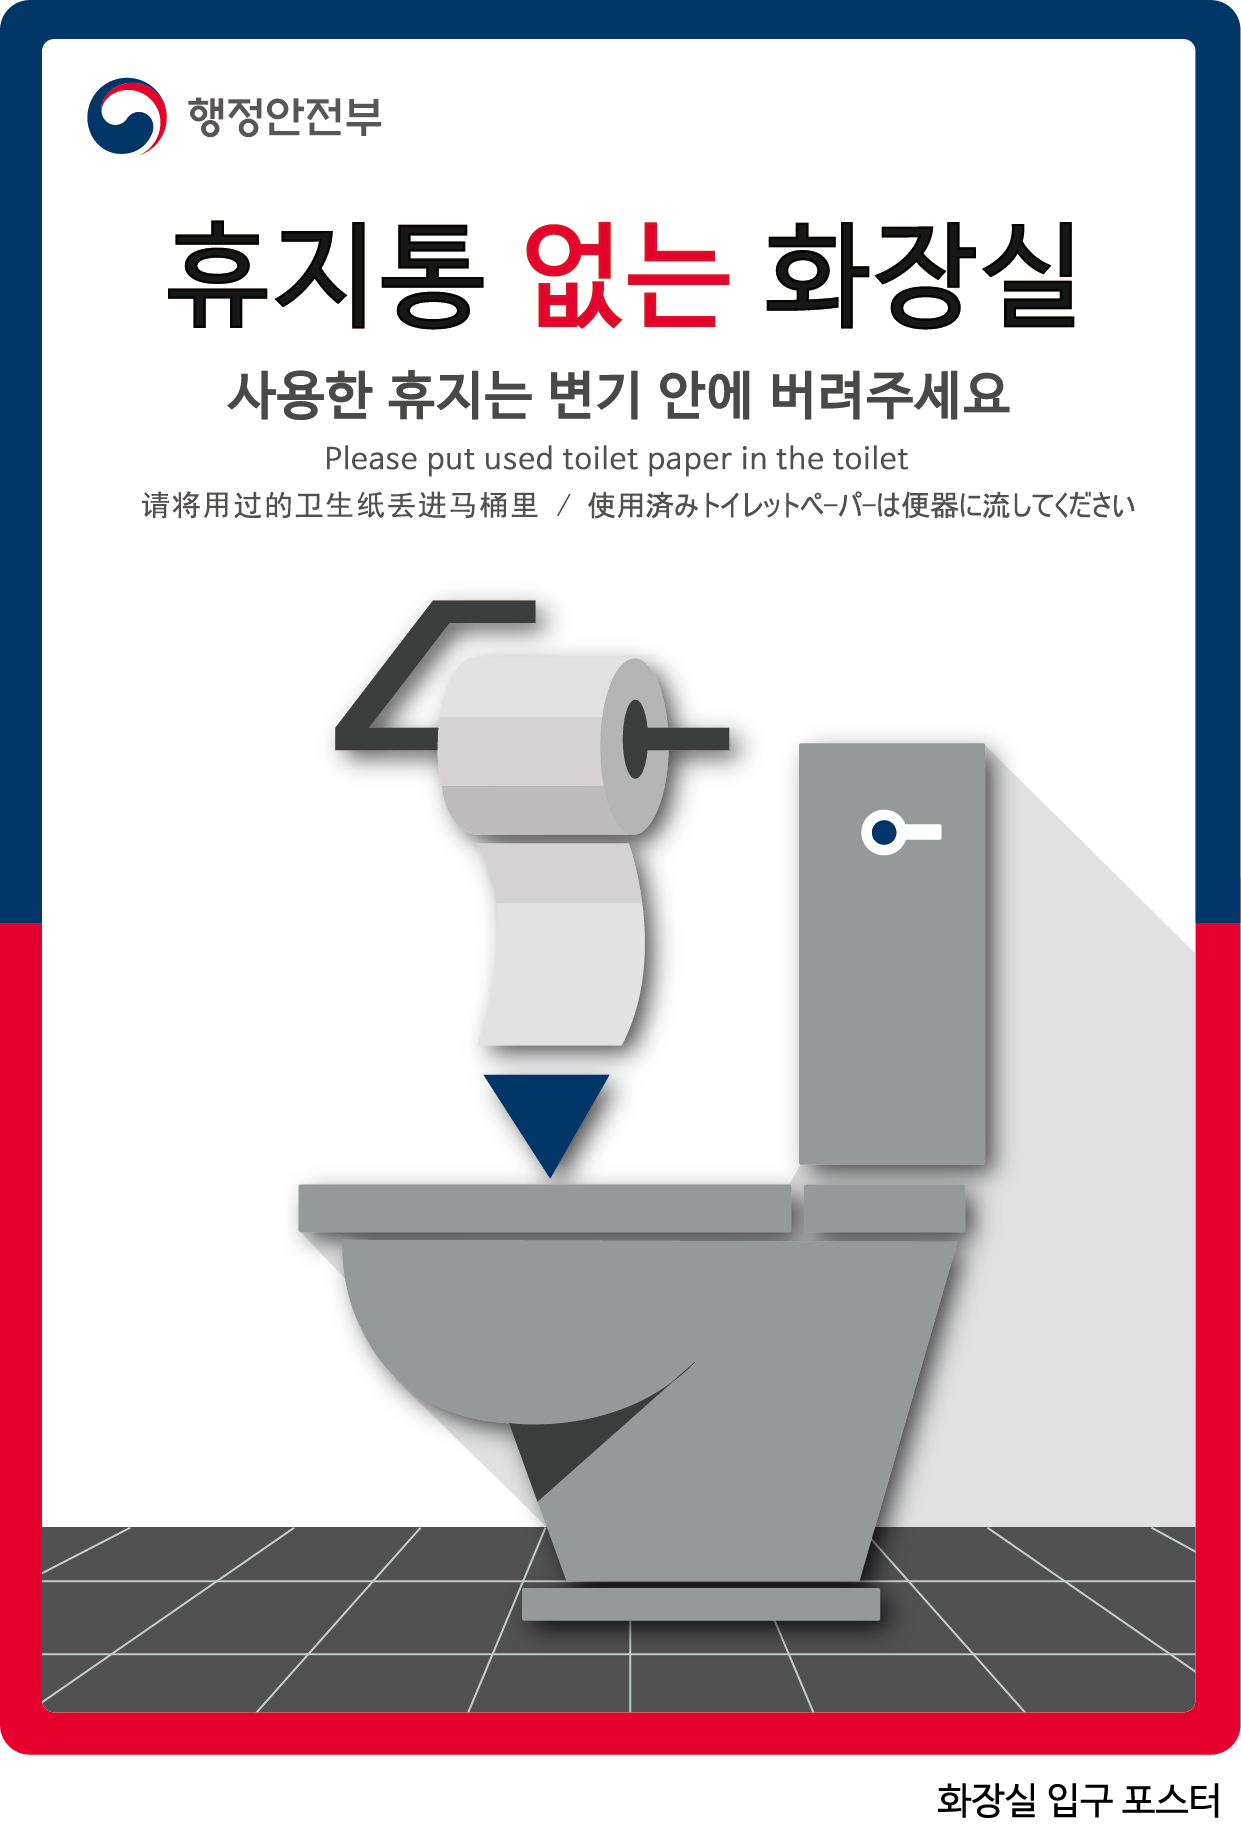 2018 공중화장실 휴지통 없애기 시행 알림 1